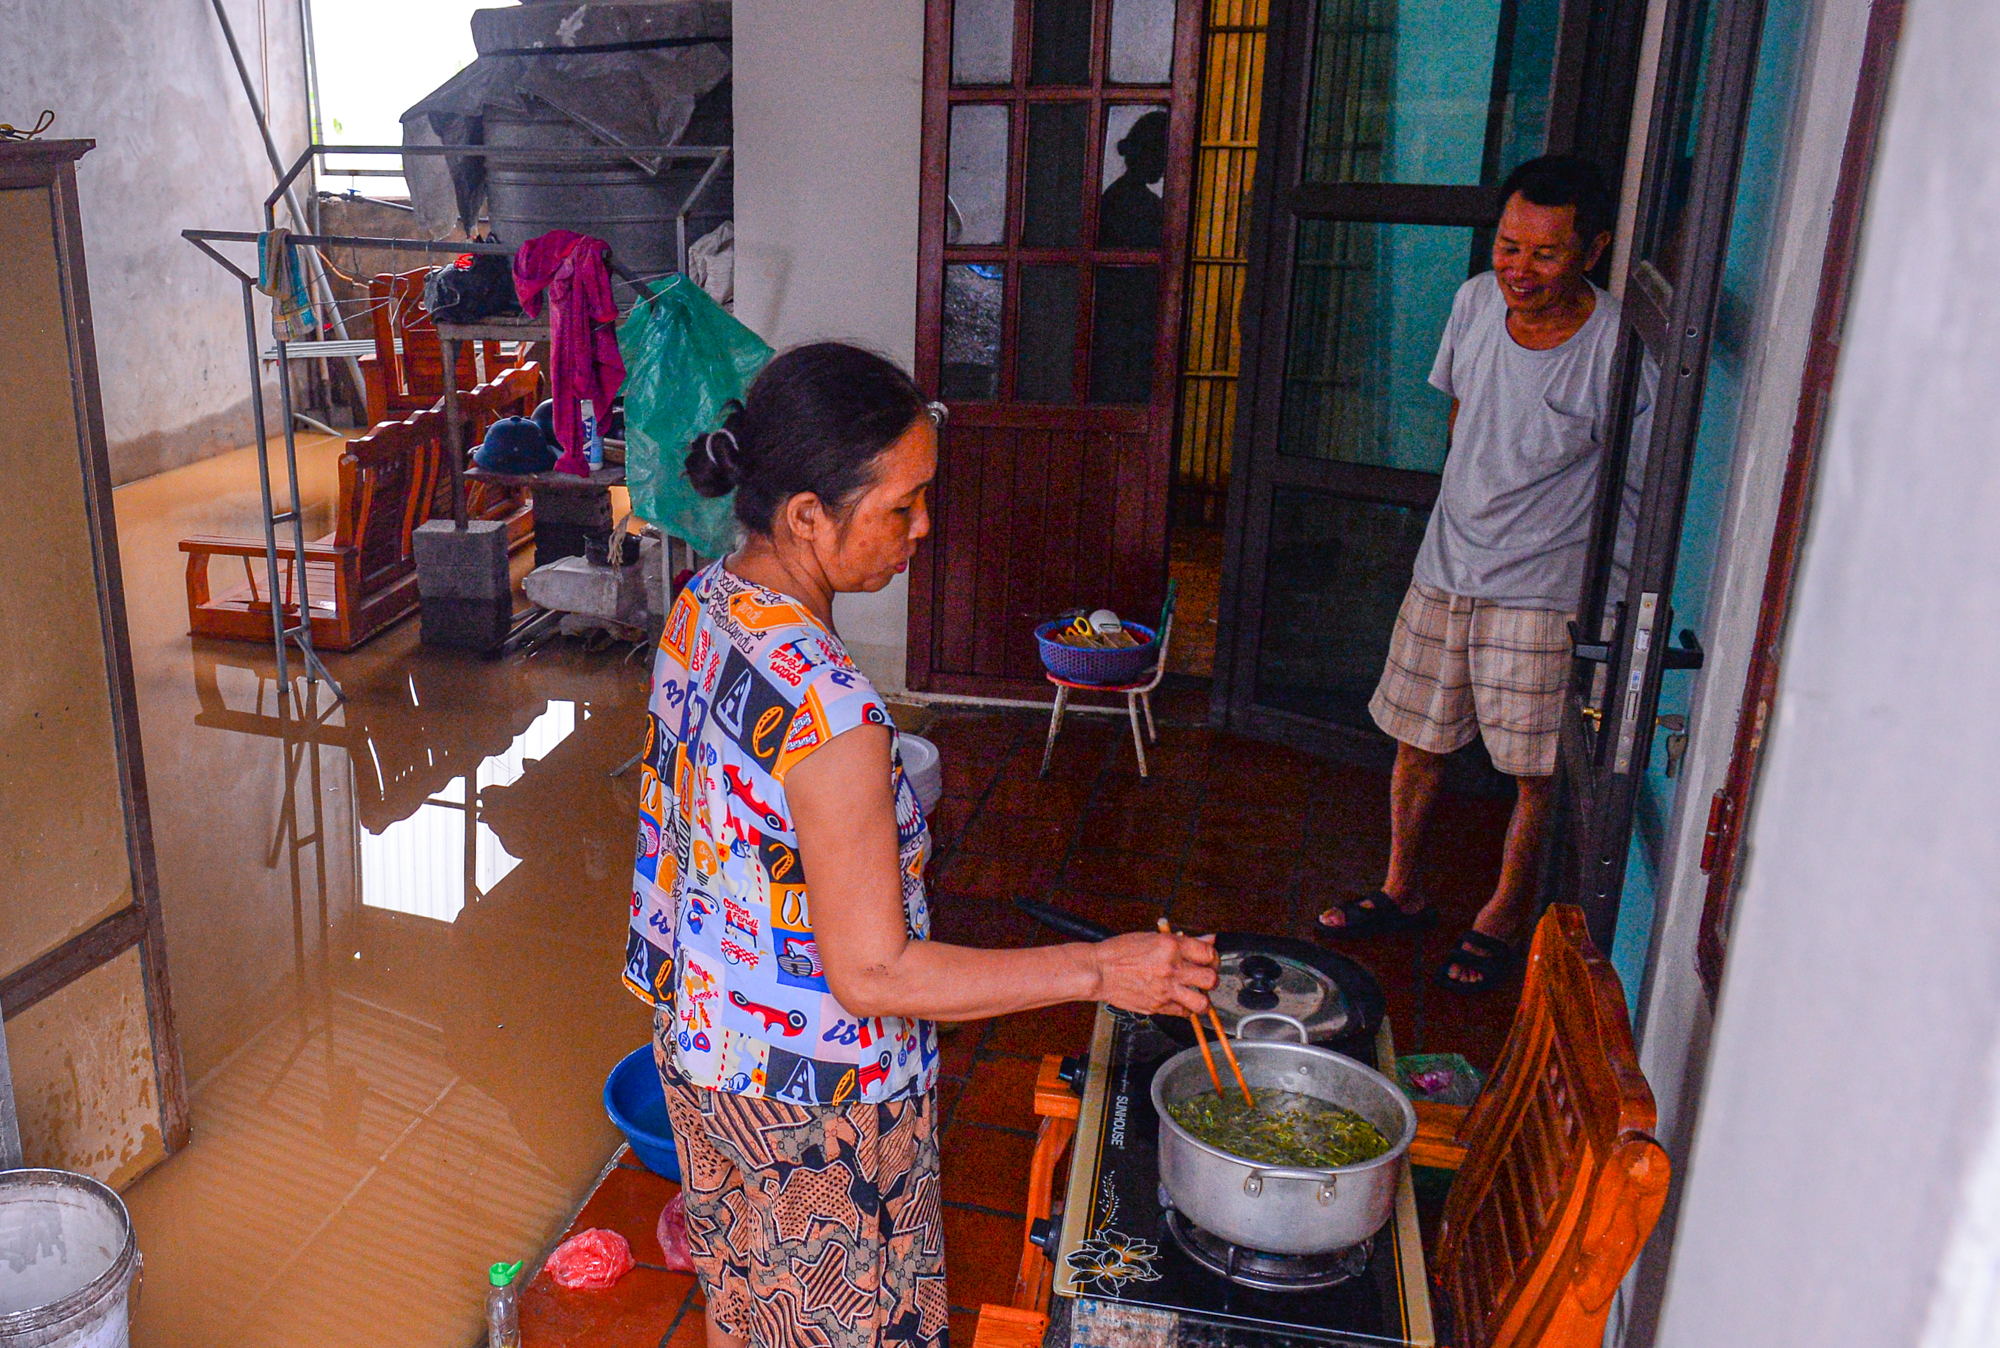 Người dân ngoại thành Hà Nội bì bõm trong nước lũ sau cơn mưa lớn: &quot;Nước lũ lên nhanh quá, chúng tôi chạy đồ không kịp&quot; - Ảnh 6.